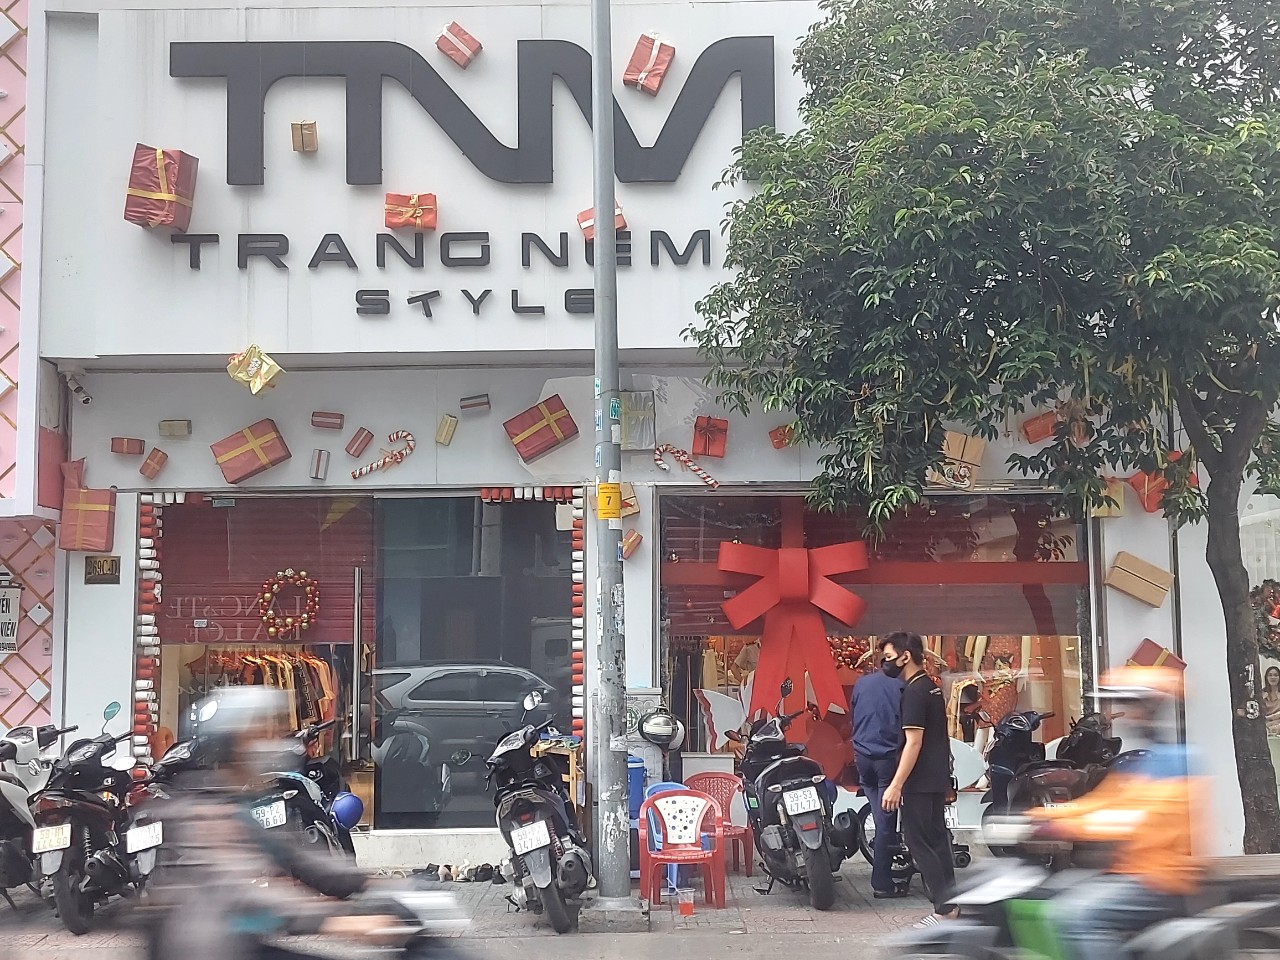 Hàng loạt các mặt hàng thời trang kinh doanh tại “TRANG NEMO STYLE” không có hoá đơn chứng từ - Ảnh 1.